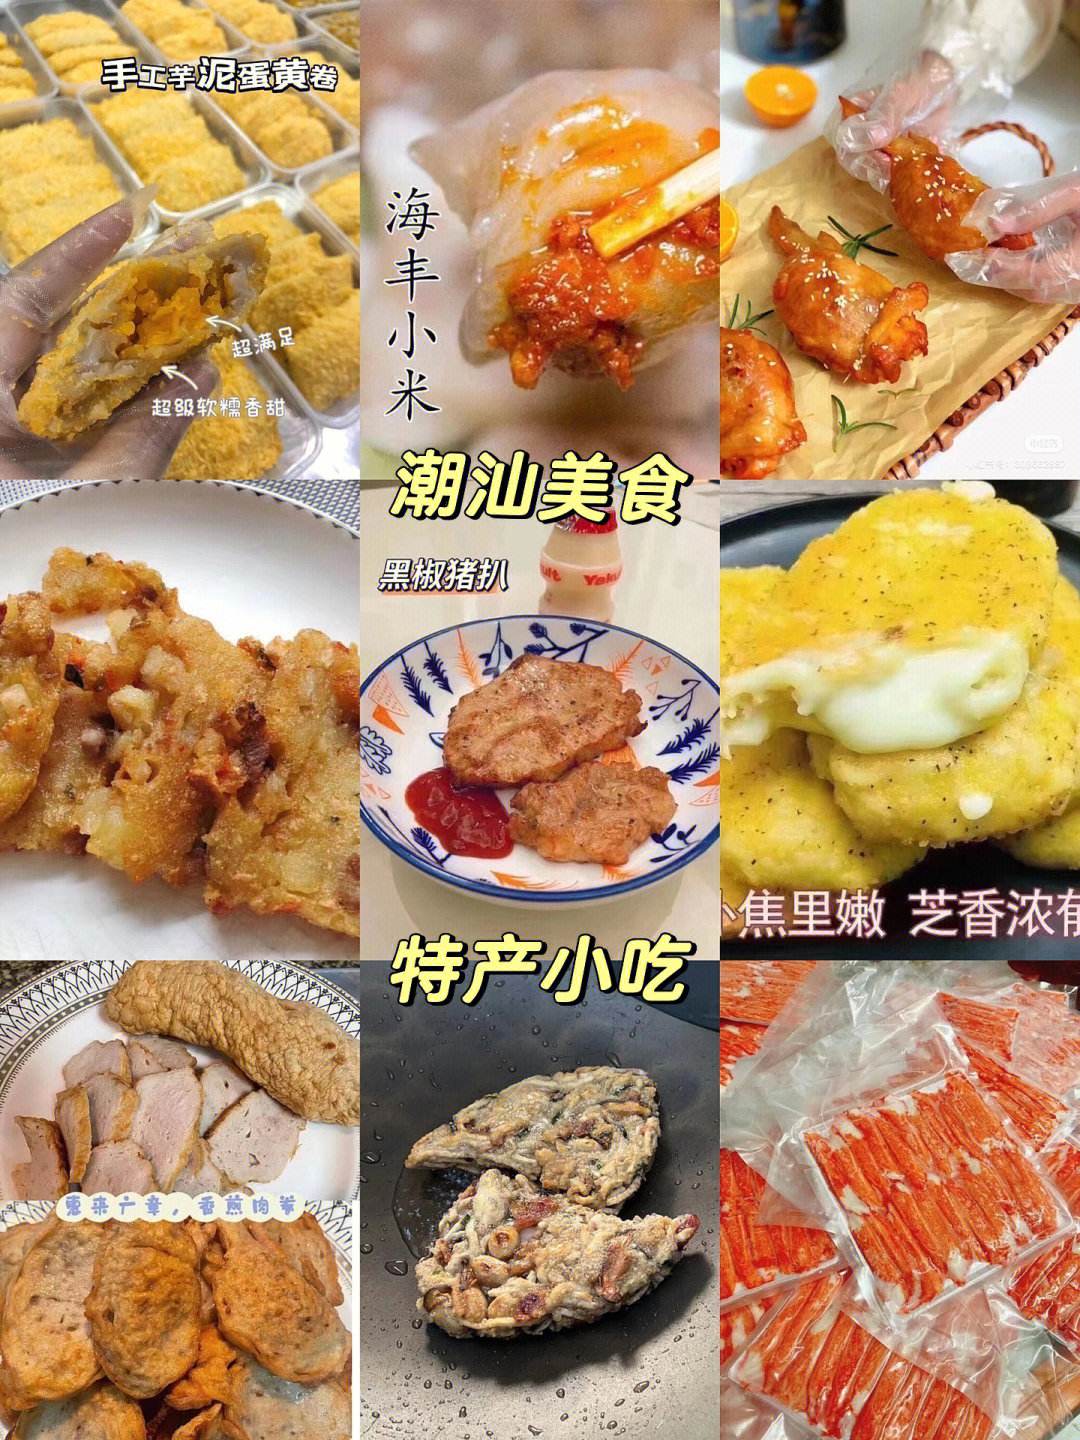 潮州特色美食小吃介绍图片